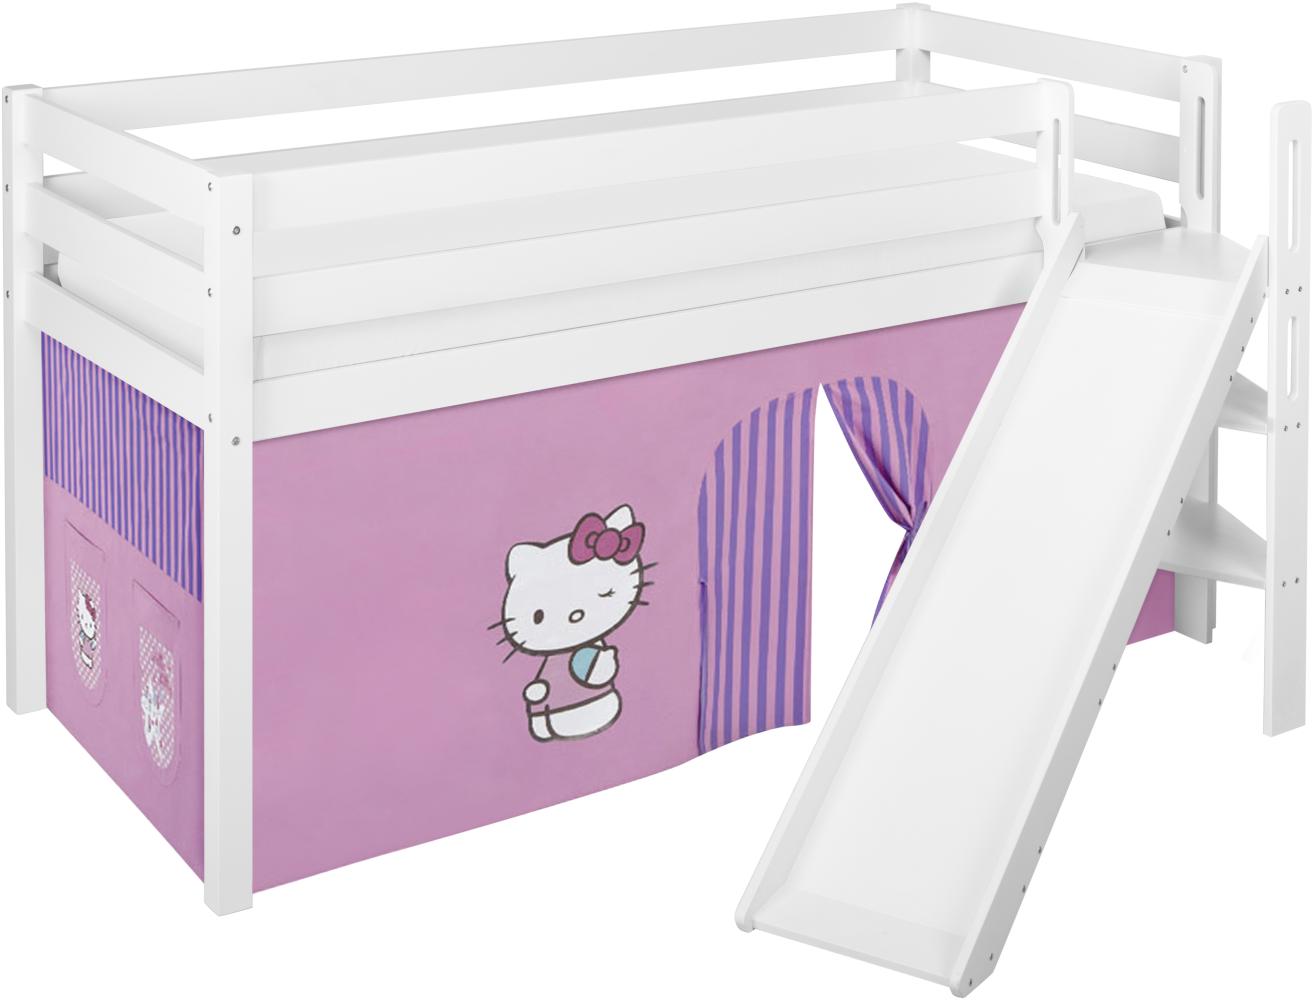 Lilokids 'Jelle' Spielbett 90 x 200 cm, Hello Kitty Lila, Kiefer massiv, mit schräger Rutsche und Vorhang Bild 1